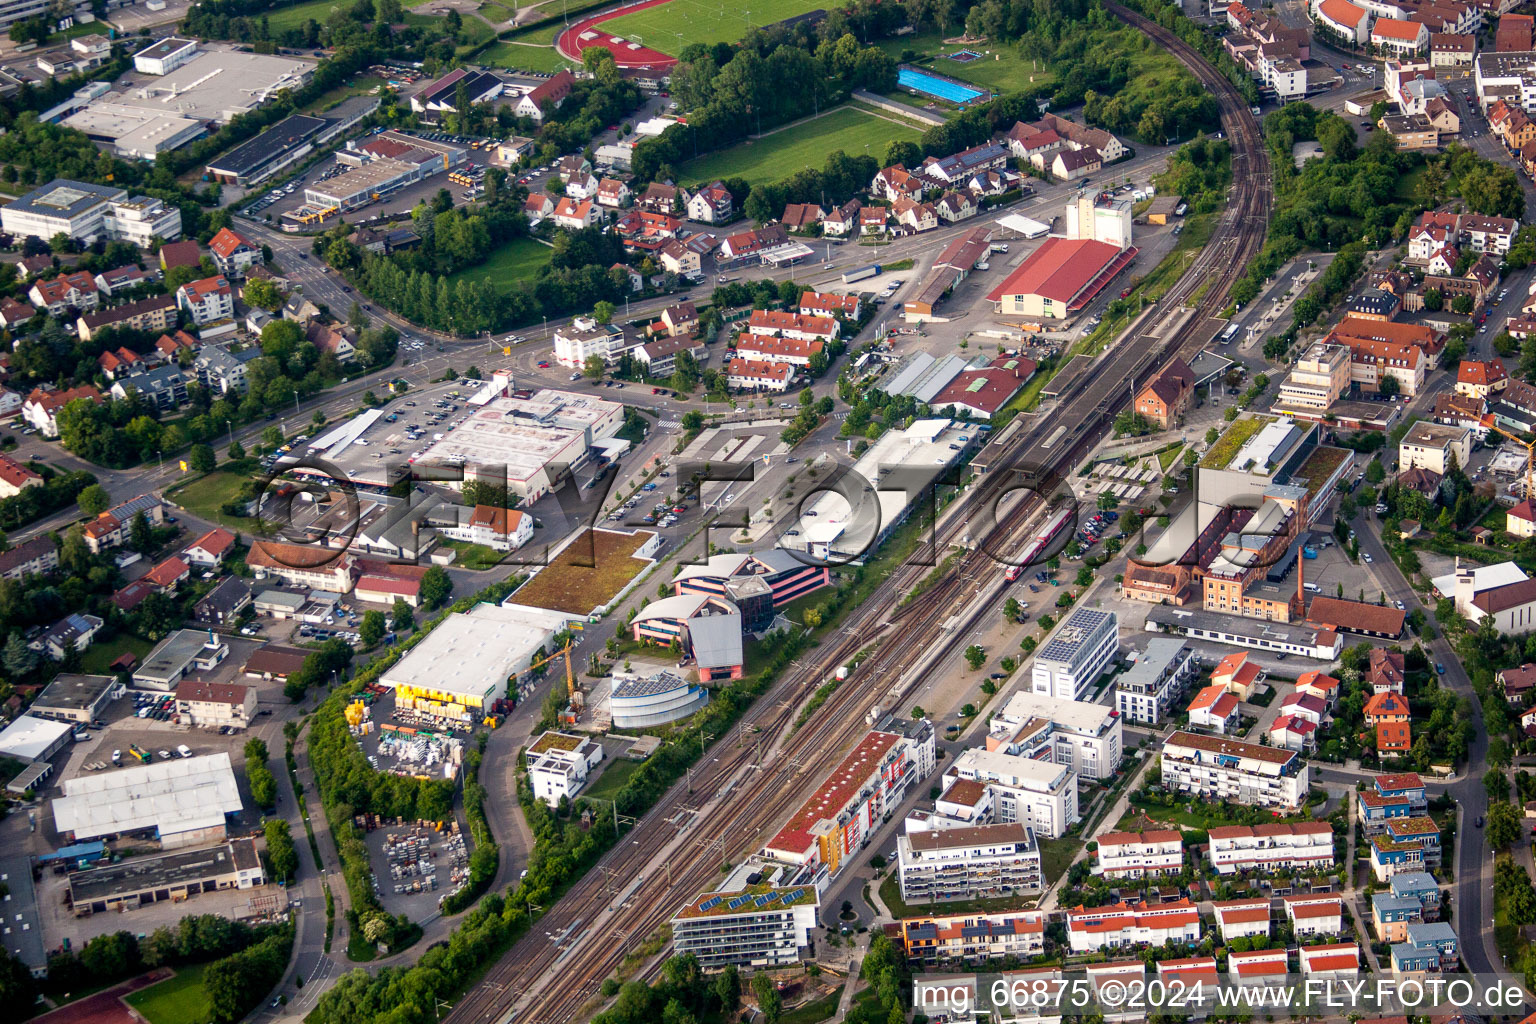 Vue aérienne de Bâtiment de la gare et voies de la station S-Bahn Herrenberg avec UDG Herrenberg GmbH et l'Université Steinbeis de Berlin à Herrenberg dans le département Bade-Wurtemberg, Allemagne